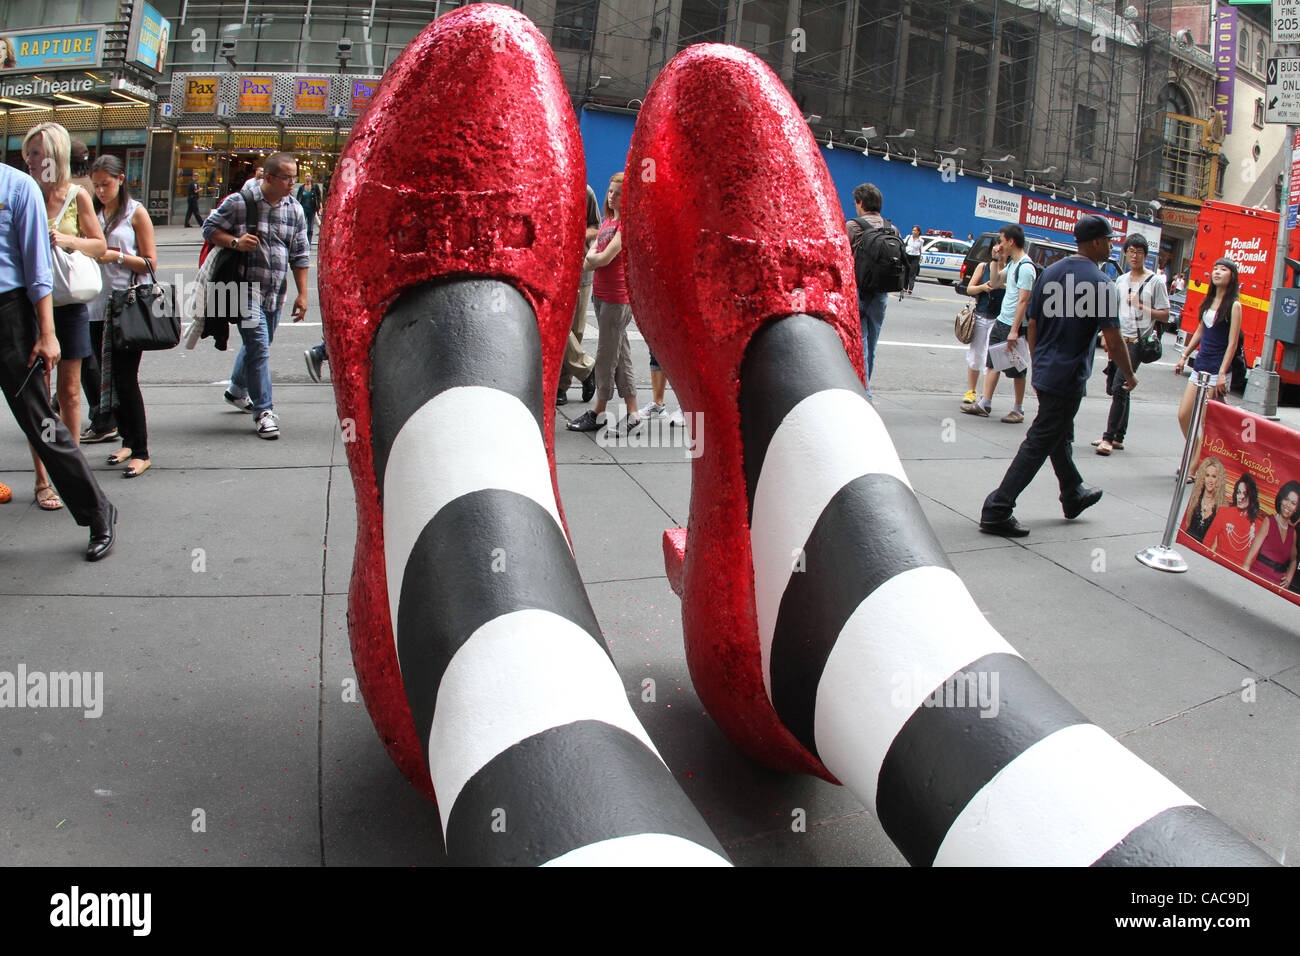 Six pieds de hauteur rouge rubis géant chaussons sur West 42nd. Trottoir  rue en l'honneur de Madame Tussauds NY's new 'Wizard of Oz'cinéma 4-D  experience et interactif 'Terre de Oz' exposition de